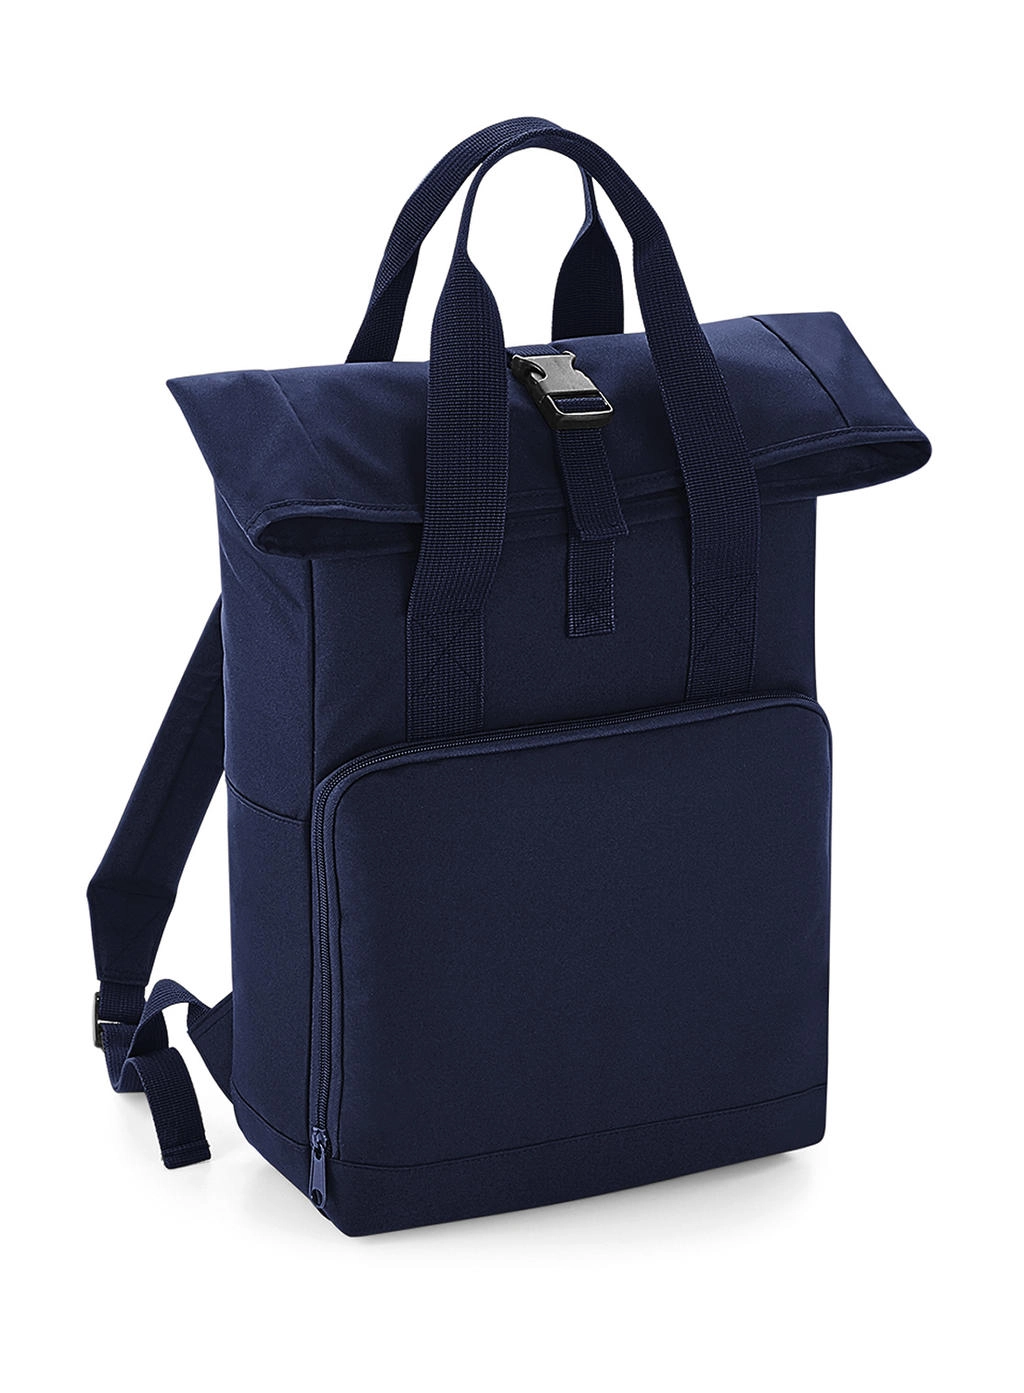 Twin Handle Roll-Top Backpack zum Besticken und Bedrucken in der Farbe Navy Dusk mit Ihren Logo, Schriftzug oder Motiv.